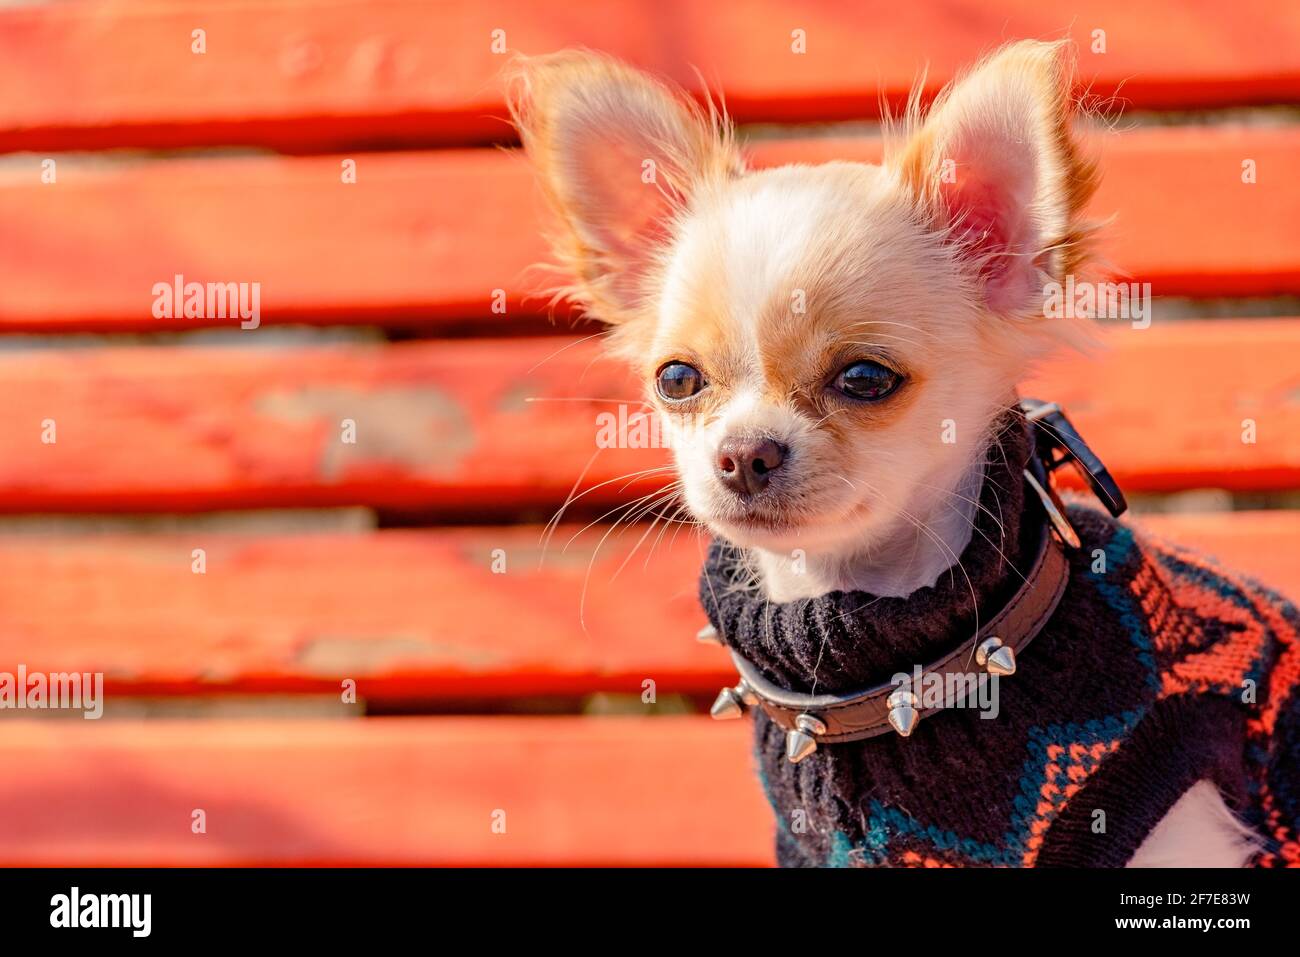 Chihuahua schwarz, braun und weiß. Niedlicher Welpe. Gut gepflegter Hund  Chihuahua Mini glatt behaart. Hund auf rotem Hintergrund. Chihuahua  Stockfotografie - Alamy